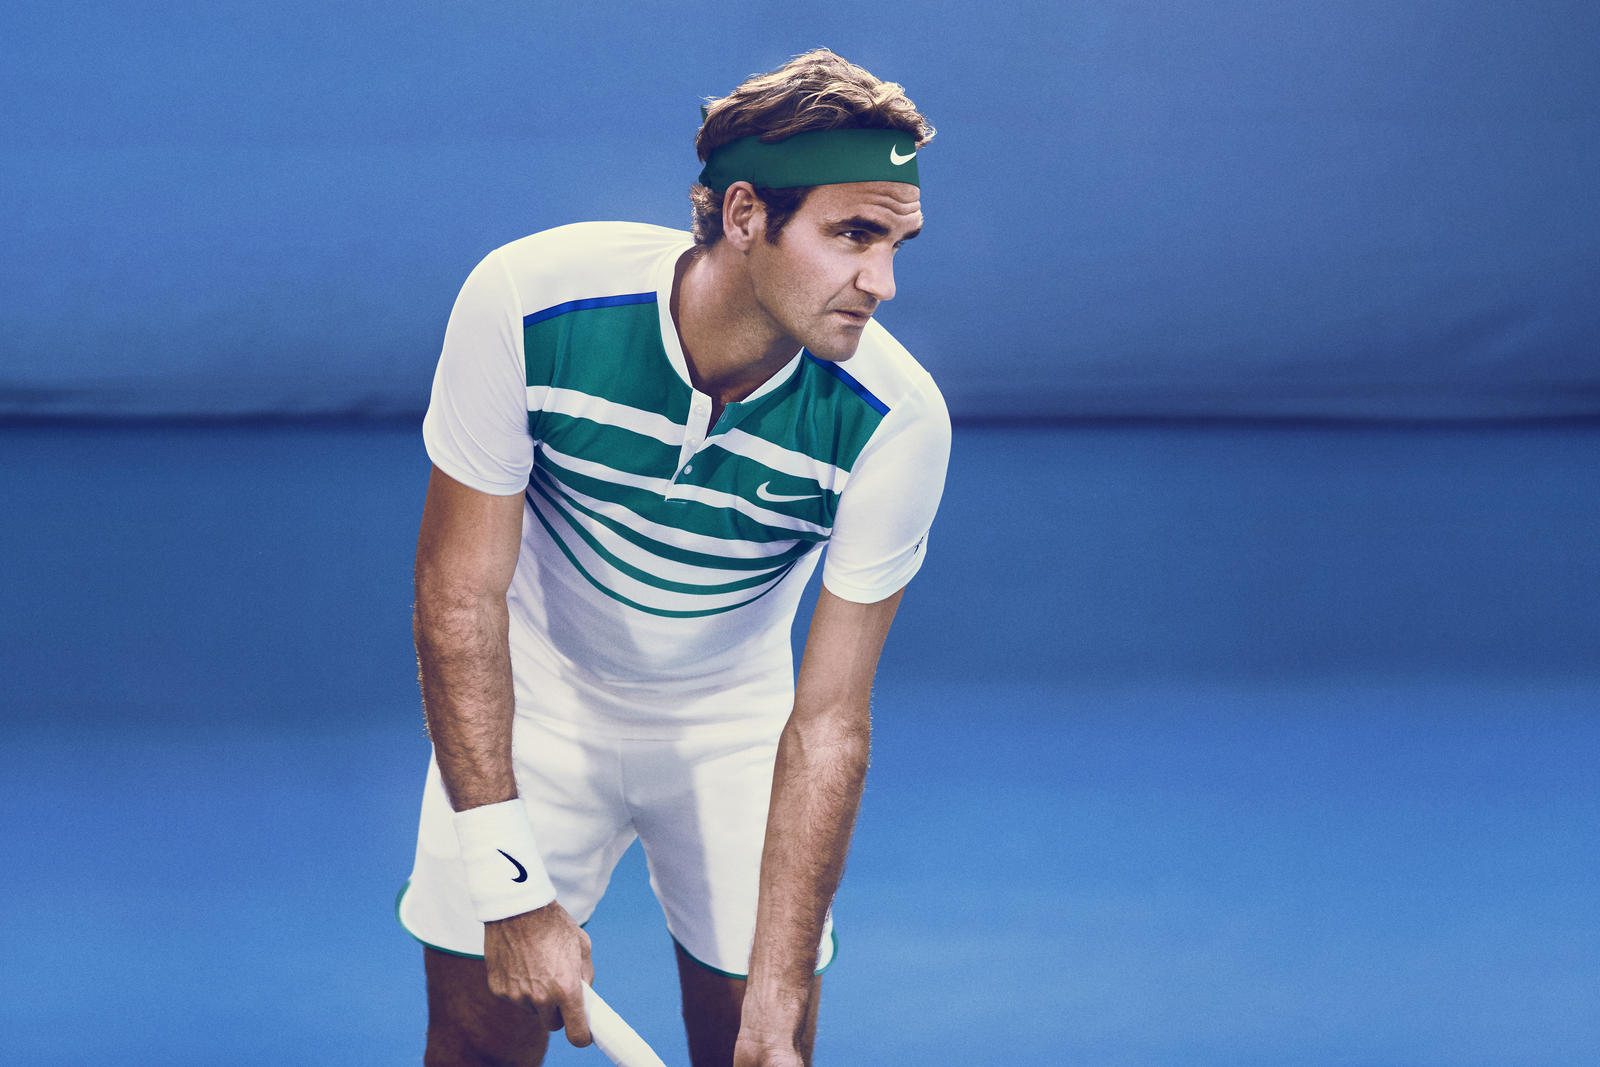 NikeCourt_Roger_Federer_1_native_1600.jpg